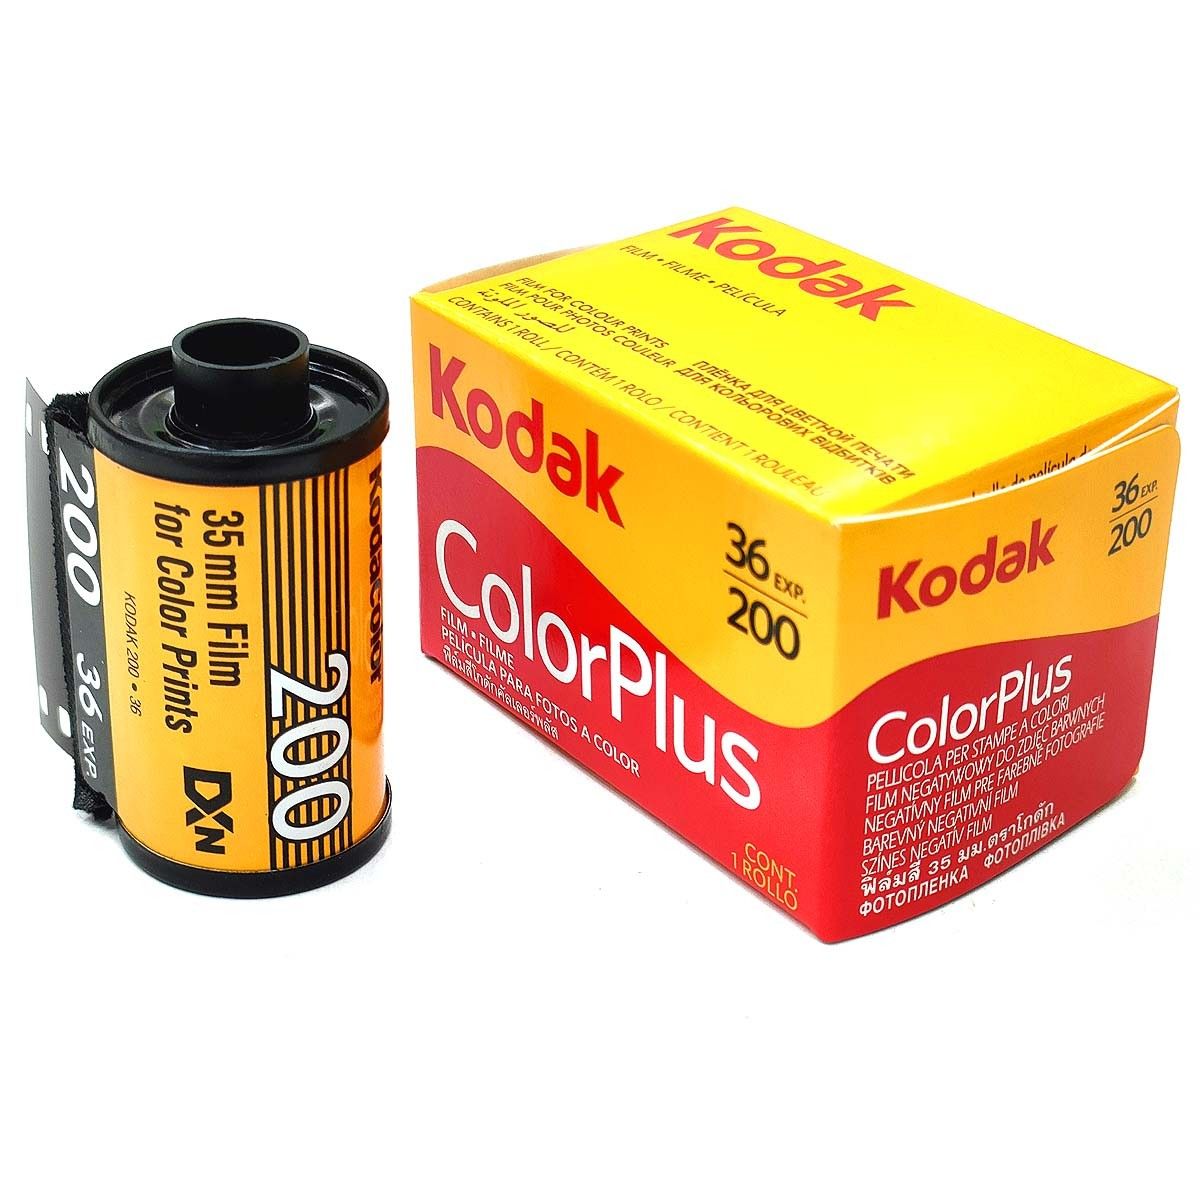 ColorPlus200-36枚撮【2本】カラーネガフィルム 135/35mm 感度200 コダック 0086806031479